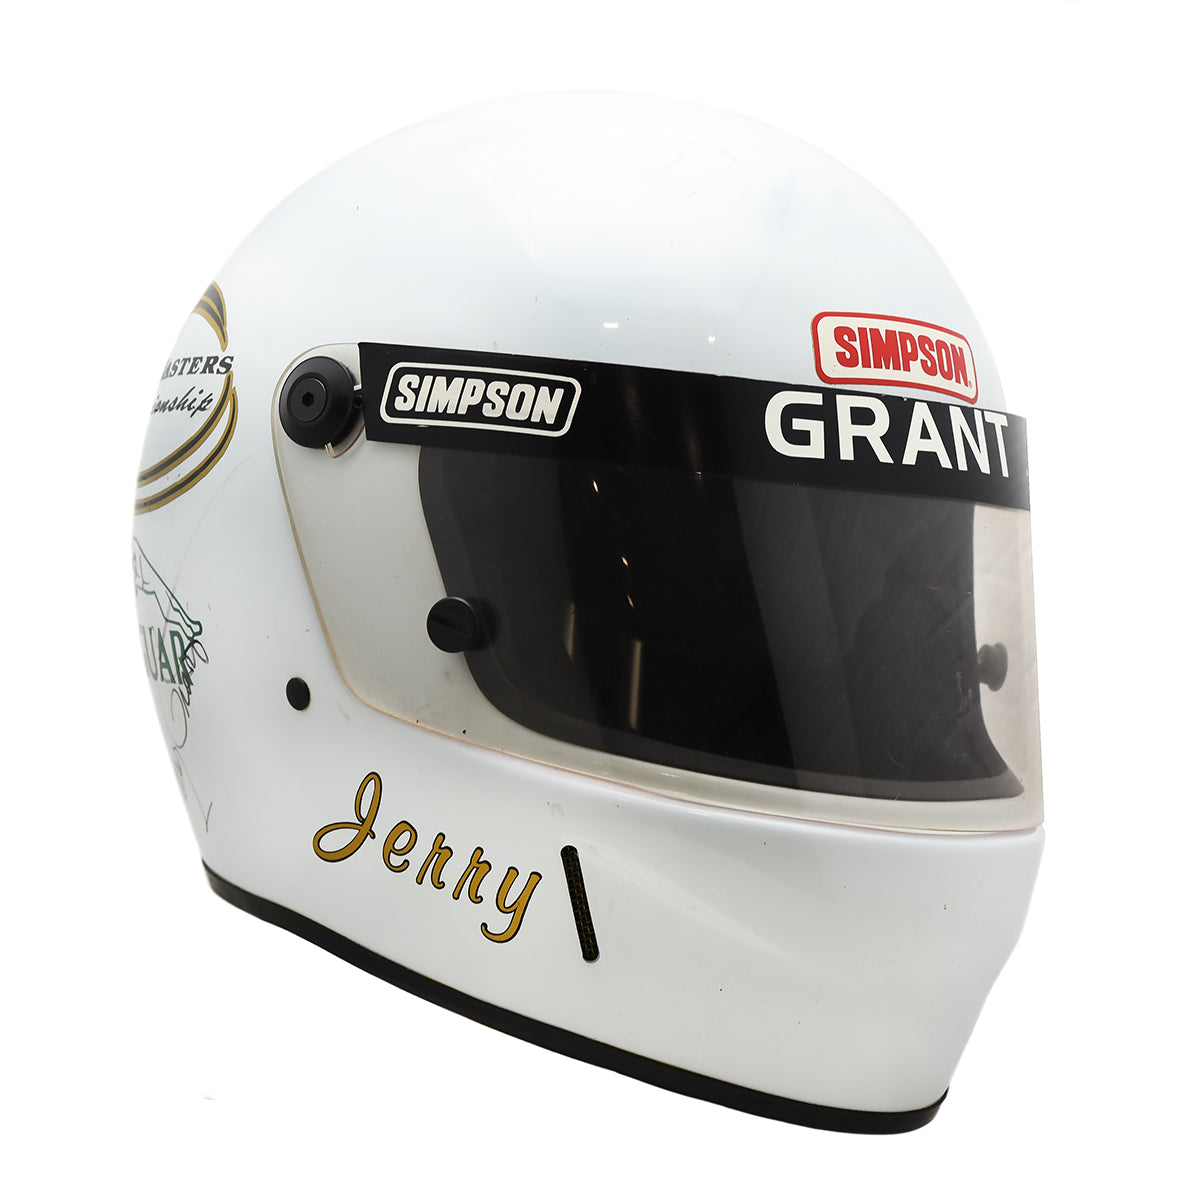 1993 Jerry Grant Signed Race Used Jaguar Fast Masters Helmet